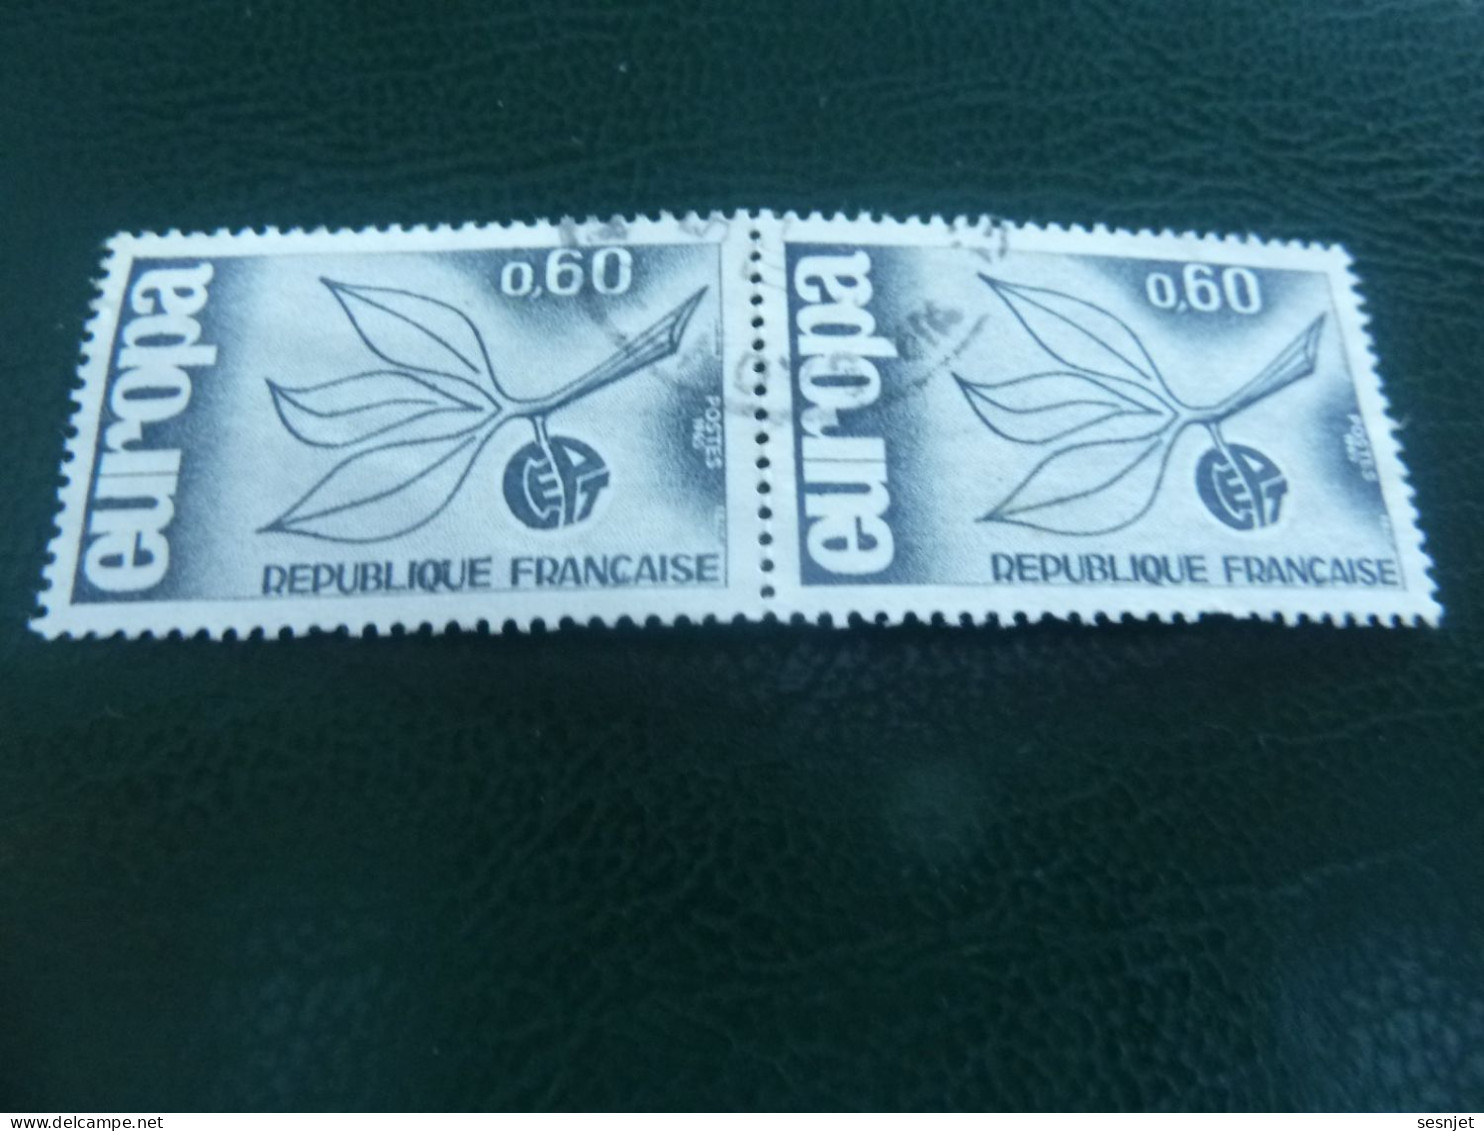 Europa - 60c. - Yt 1456 - Bleu-gris - Double Oblitérés - Année 1965 - - 1965